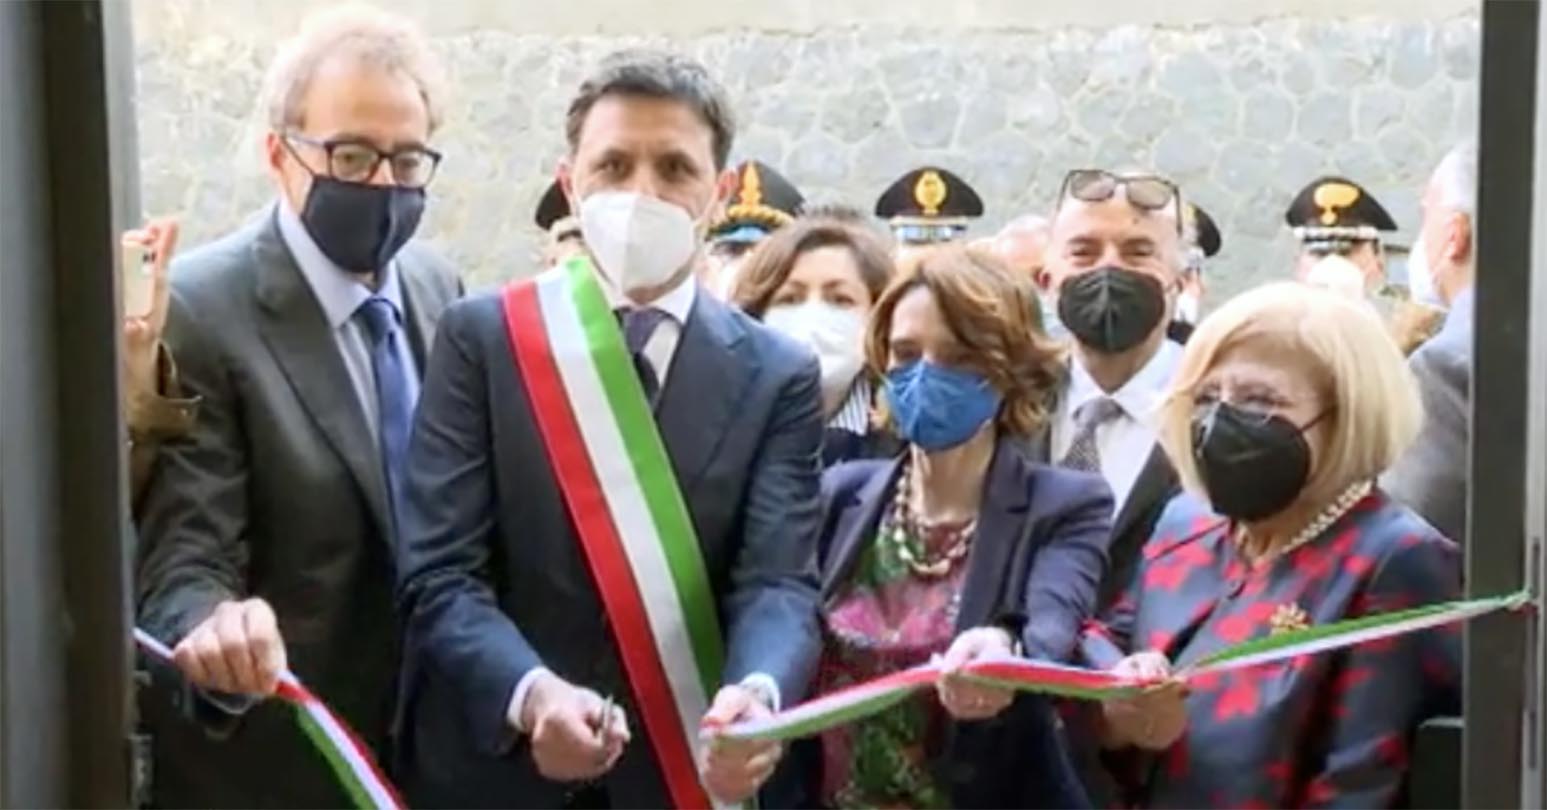 La ministra Bonetti inaugura il centro antiviolenza di Ercolano